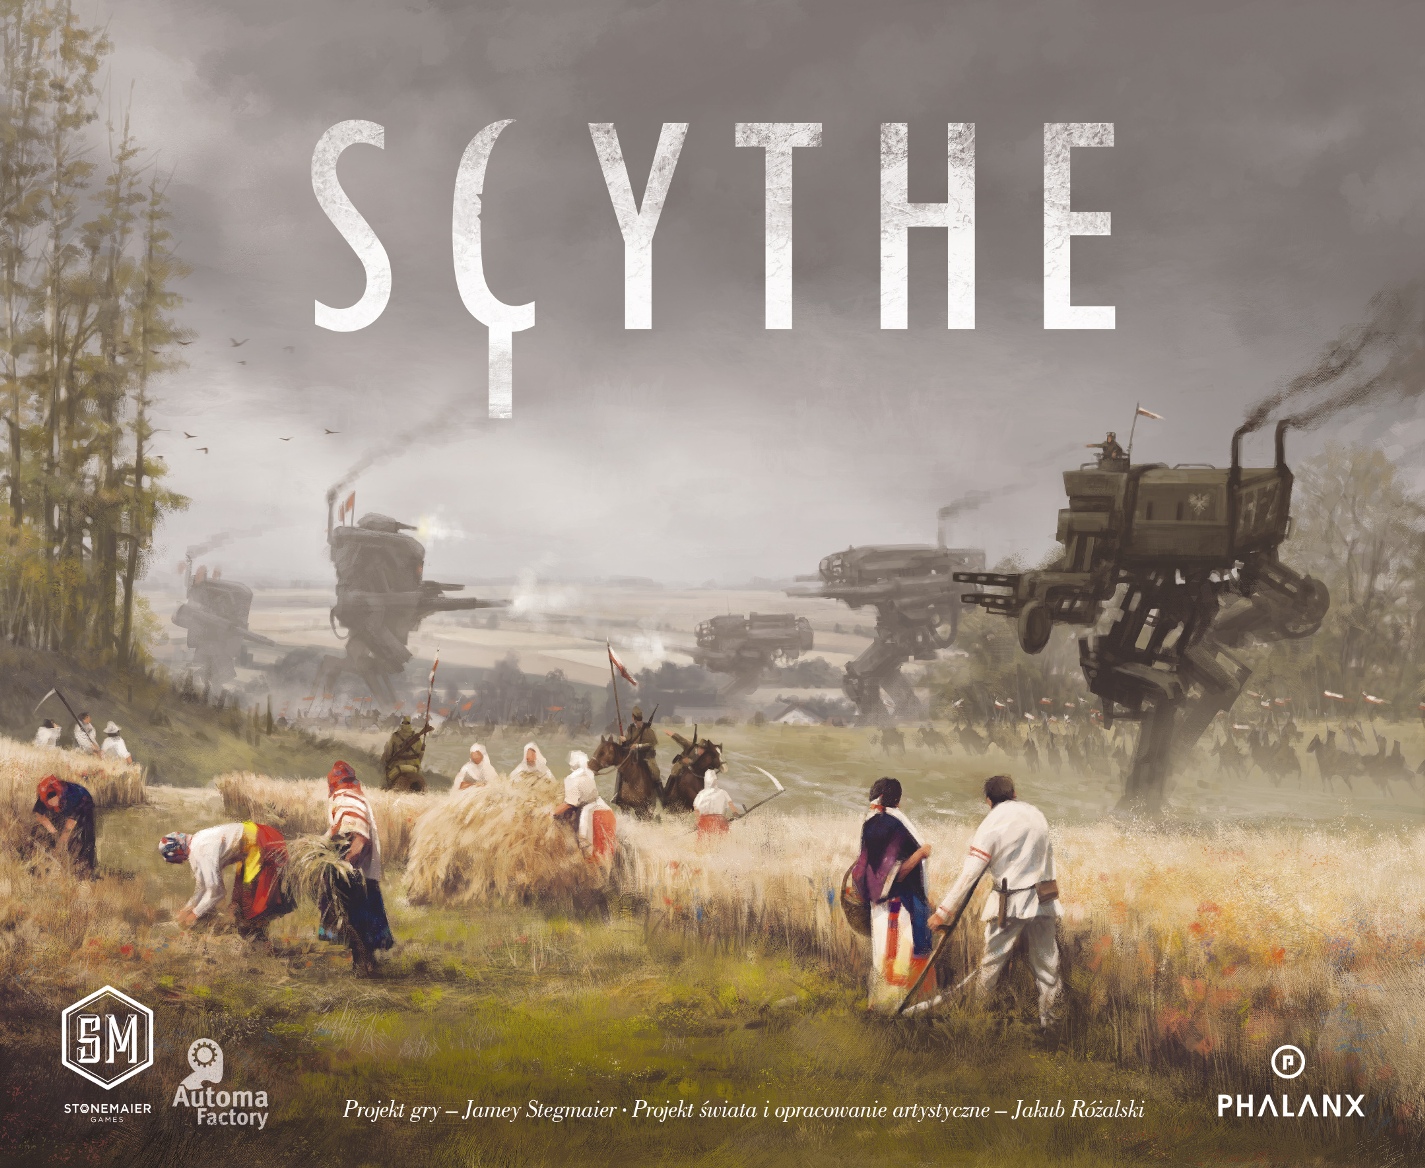 Scythe (edycja polska)